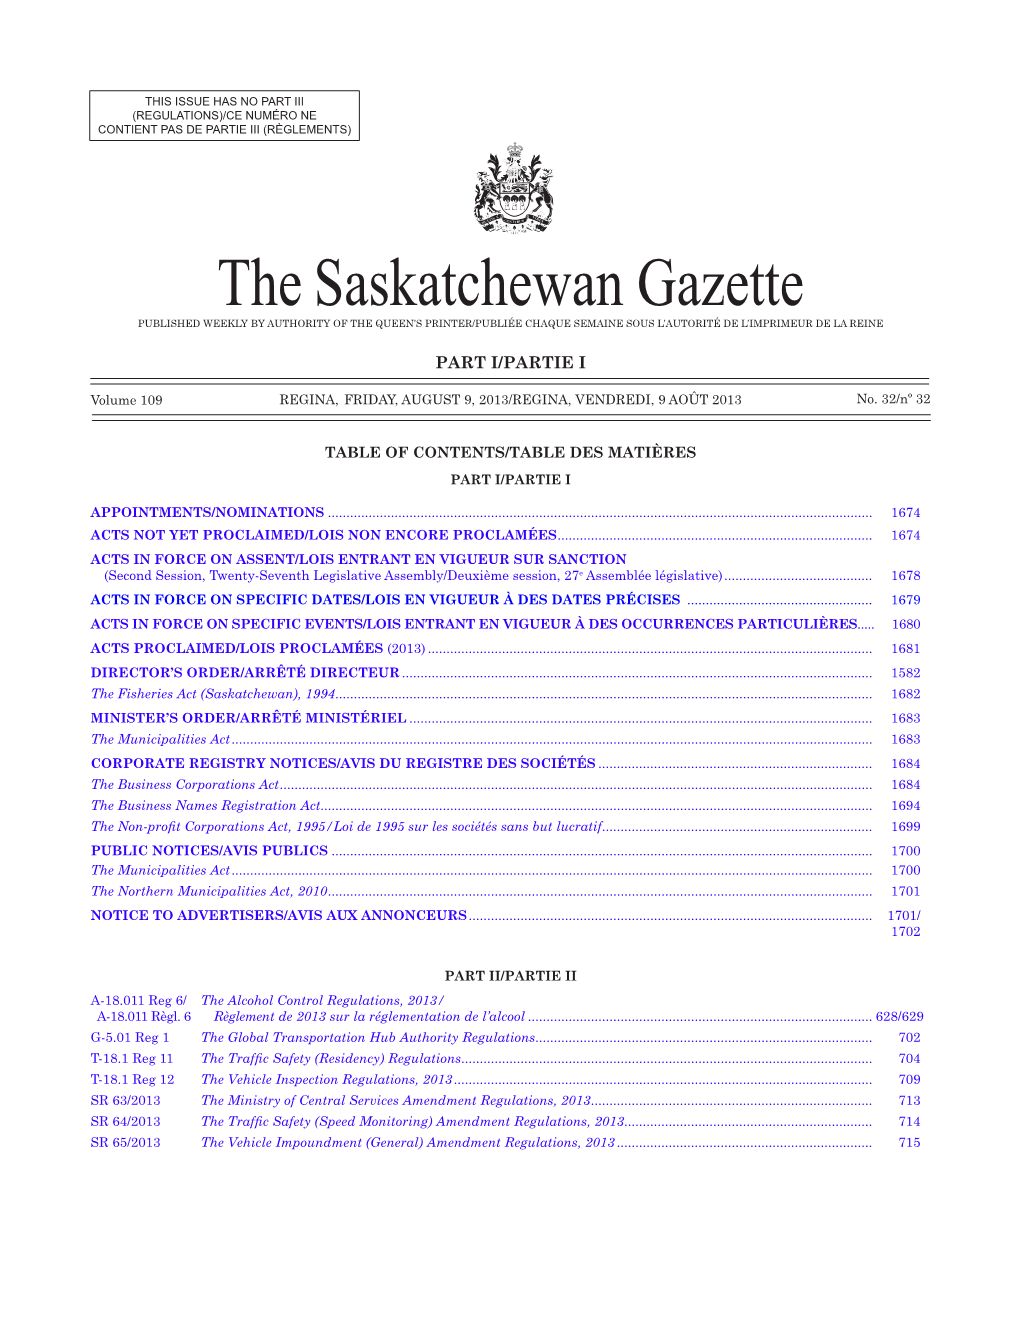 THE SASKATCHEWAN GAZETTE, August 9, 2013 1673 (REGULATIONS)/CE NUMÉRO NE CONTIENT PAS DE PARTIE III (RÈGLEMENTS)